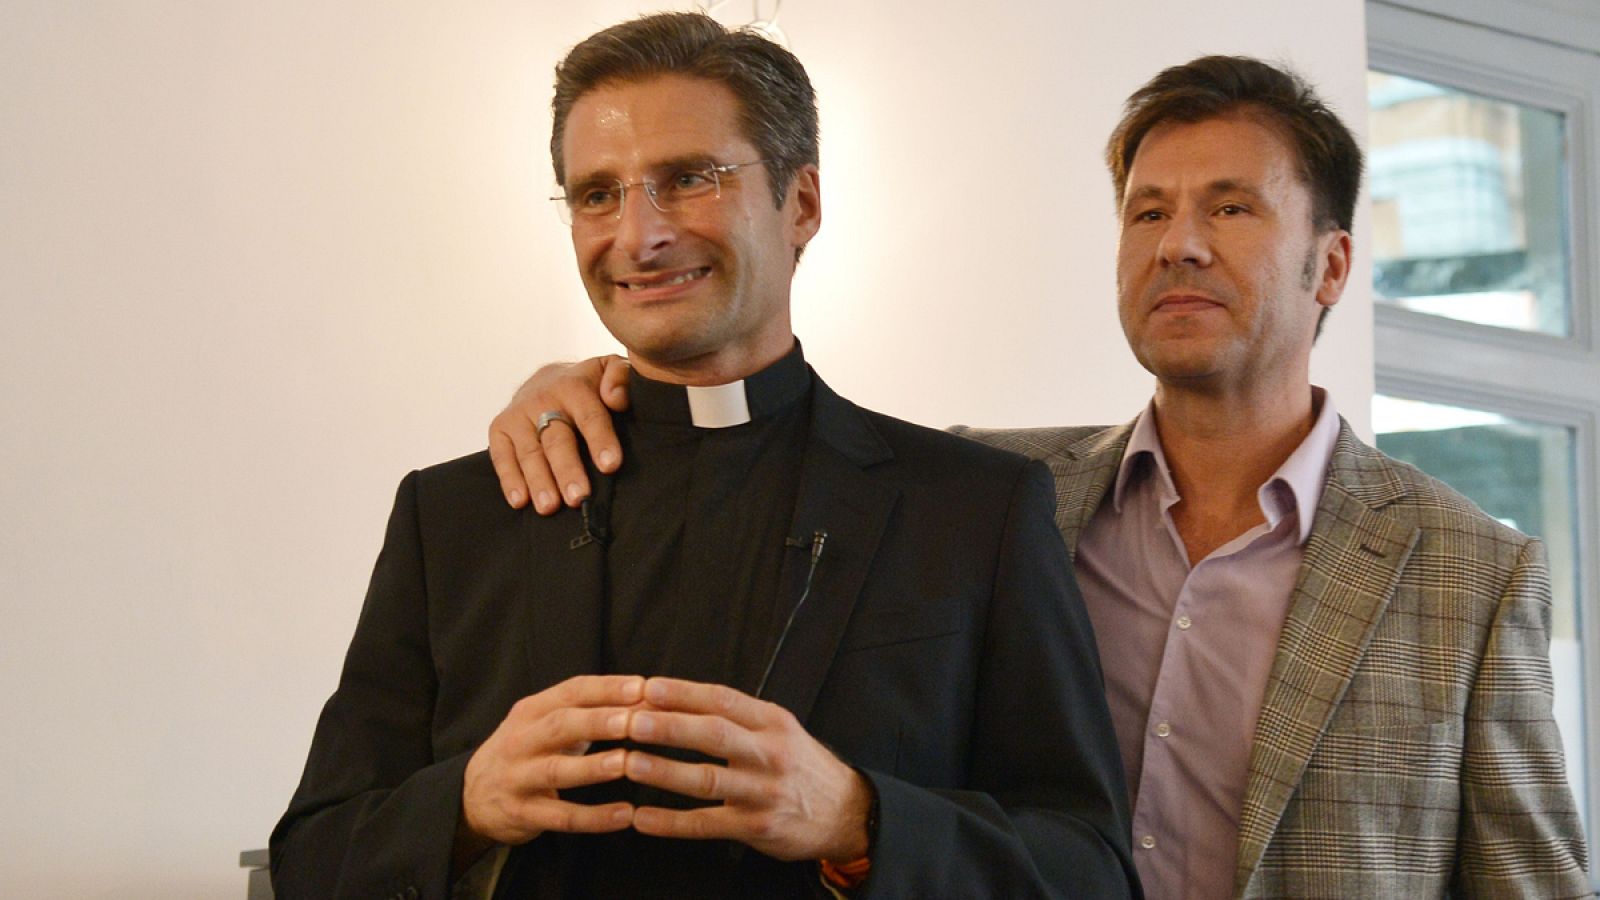 El sacerdote Krysztof Olaf Charamsa junto con su pareja durante la rueda de prensa